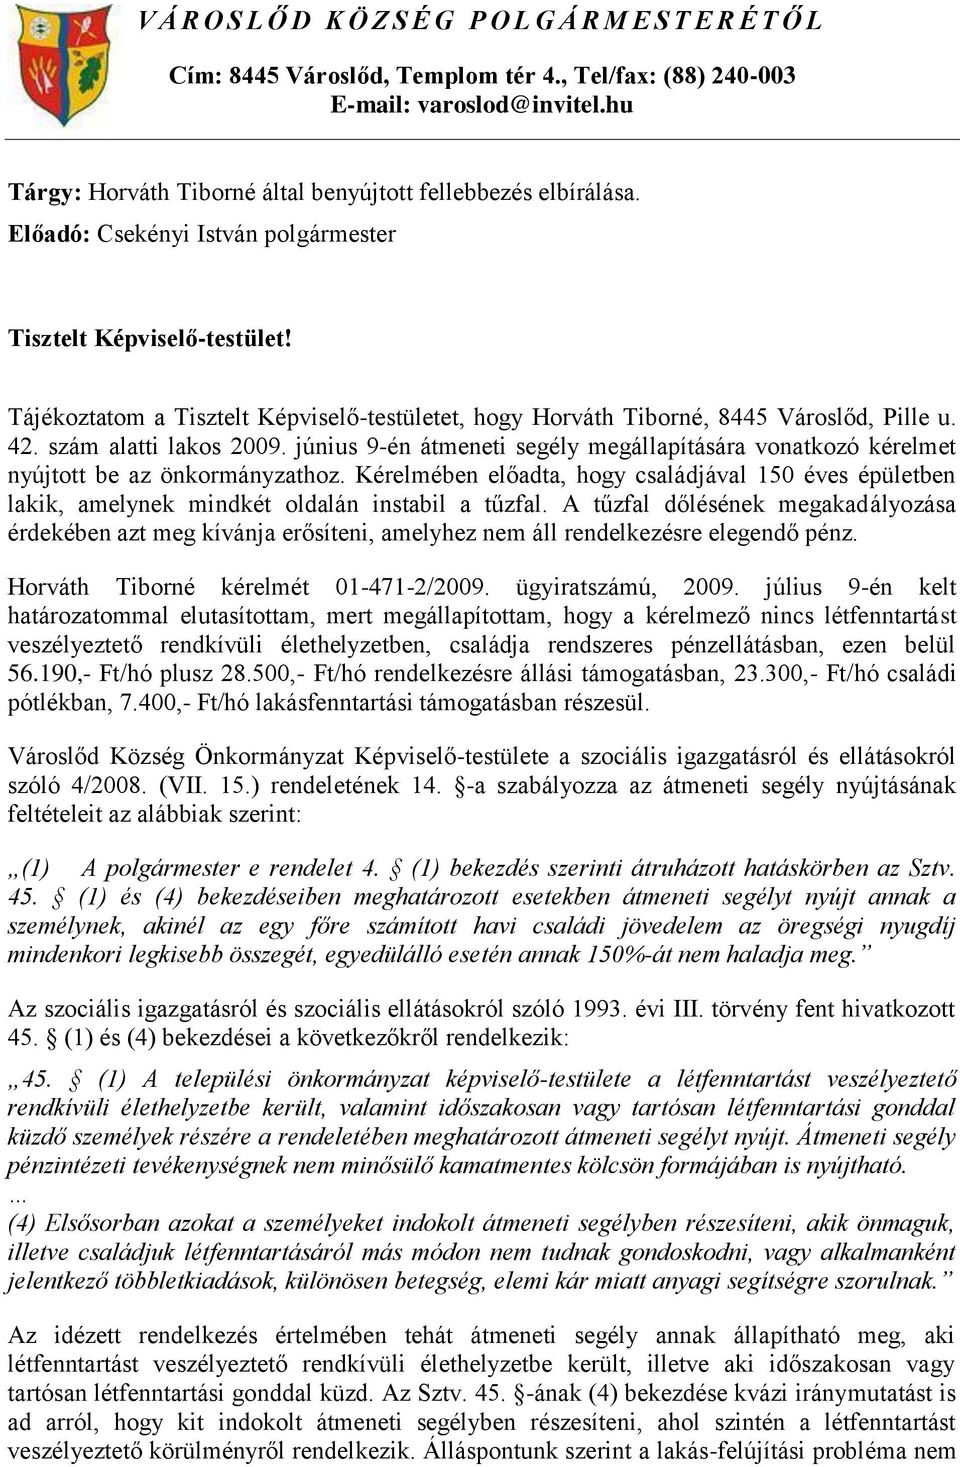 Tájékoztatom a Tisztelt Képviselő-testületet, hogy Horváth Tiborné, 8445 Városlőd, Pille u. 42. szám alatti lakos 2009.